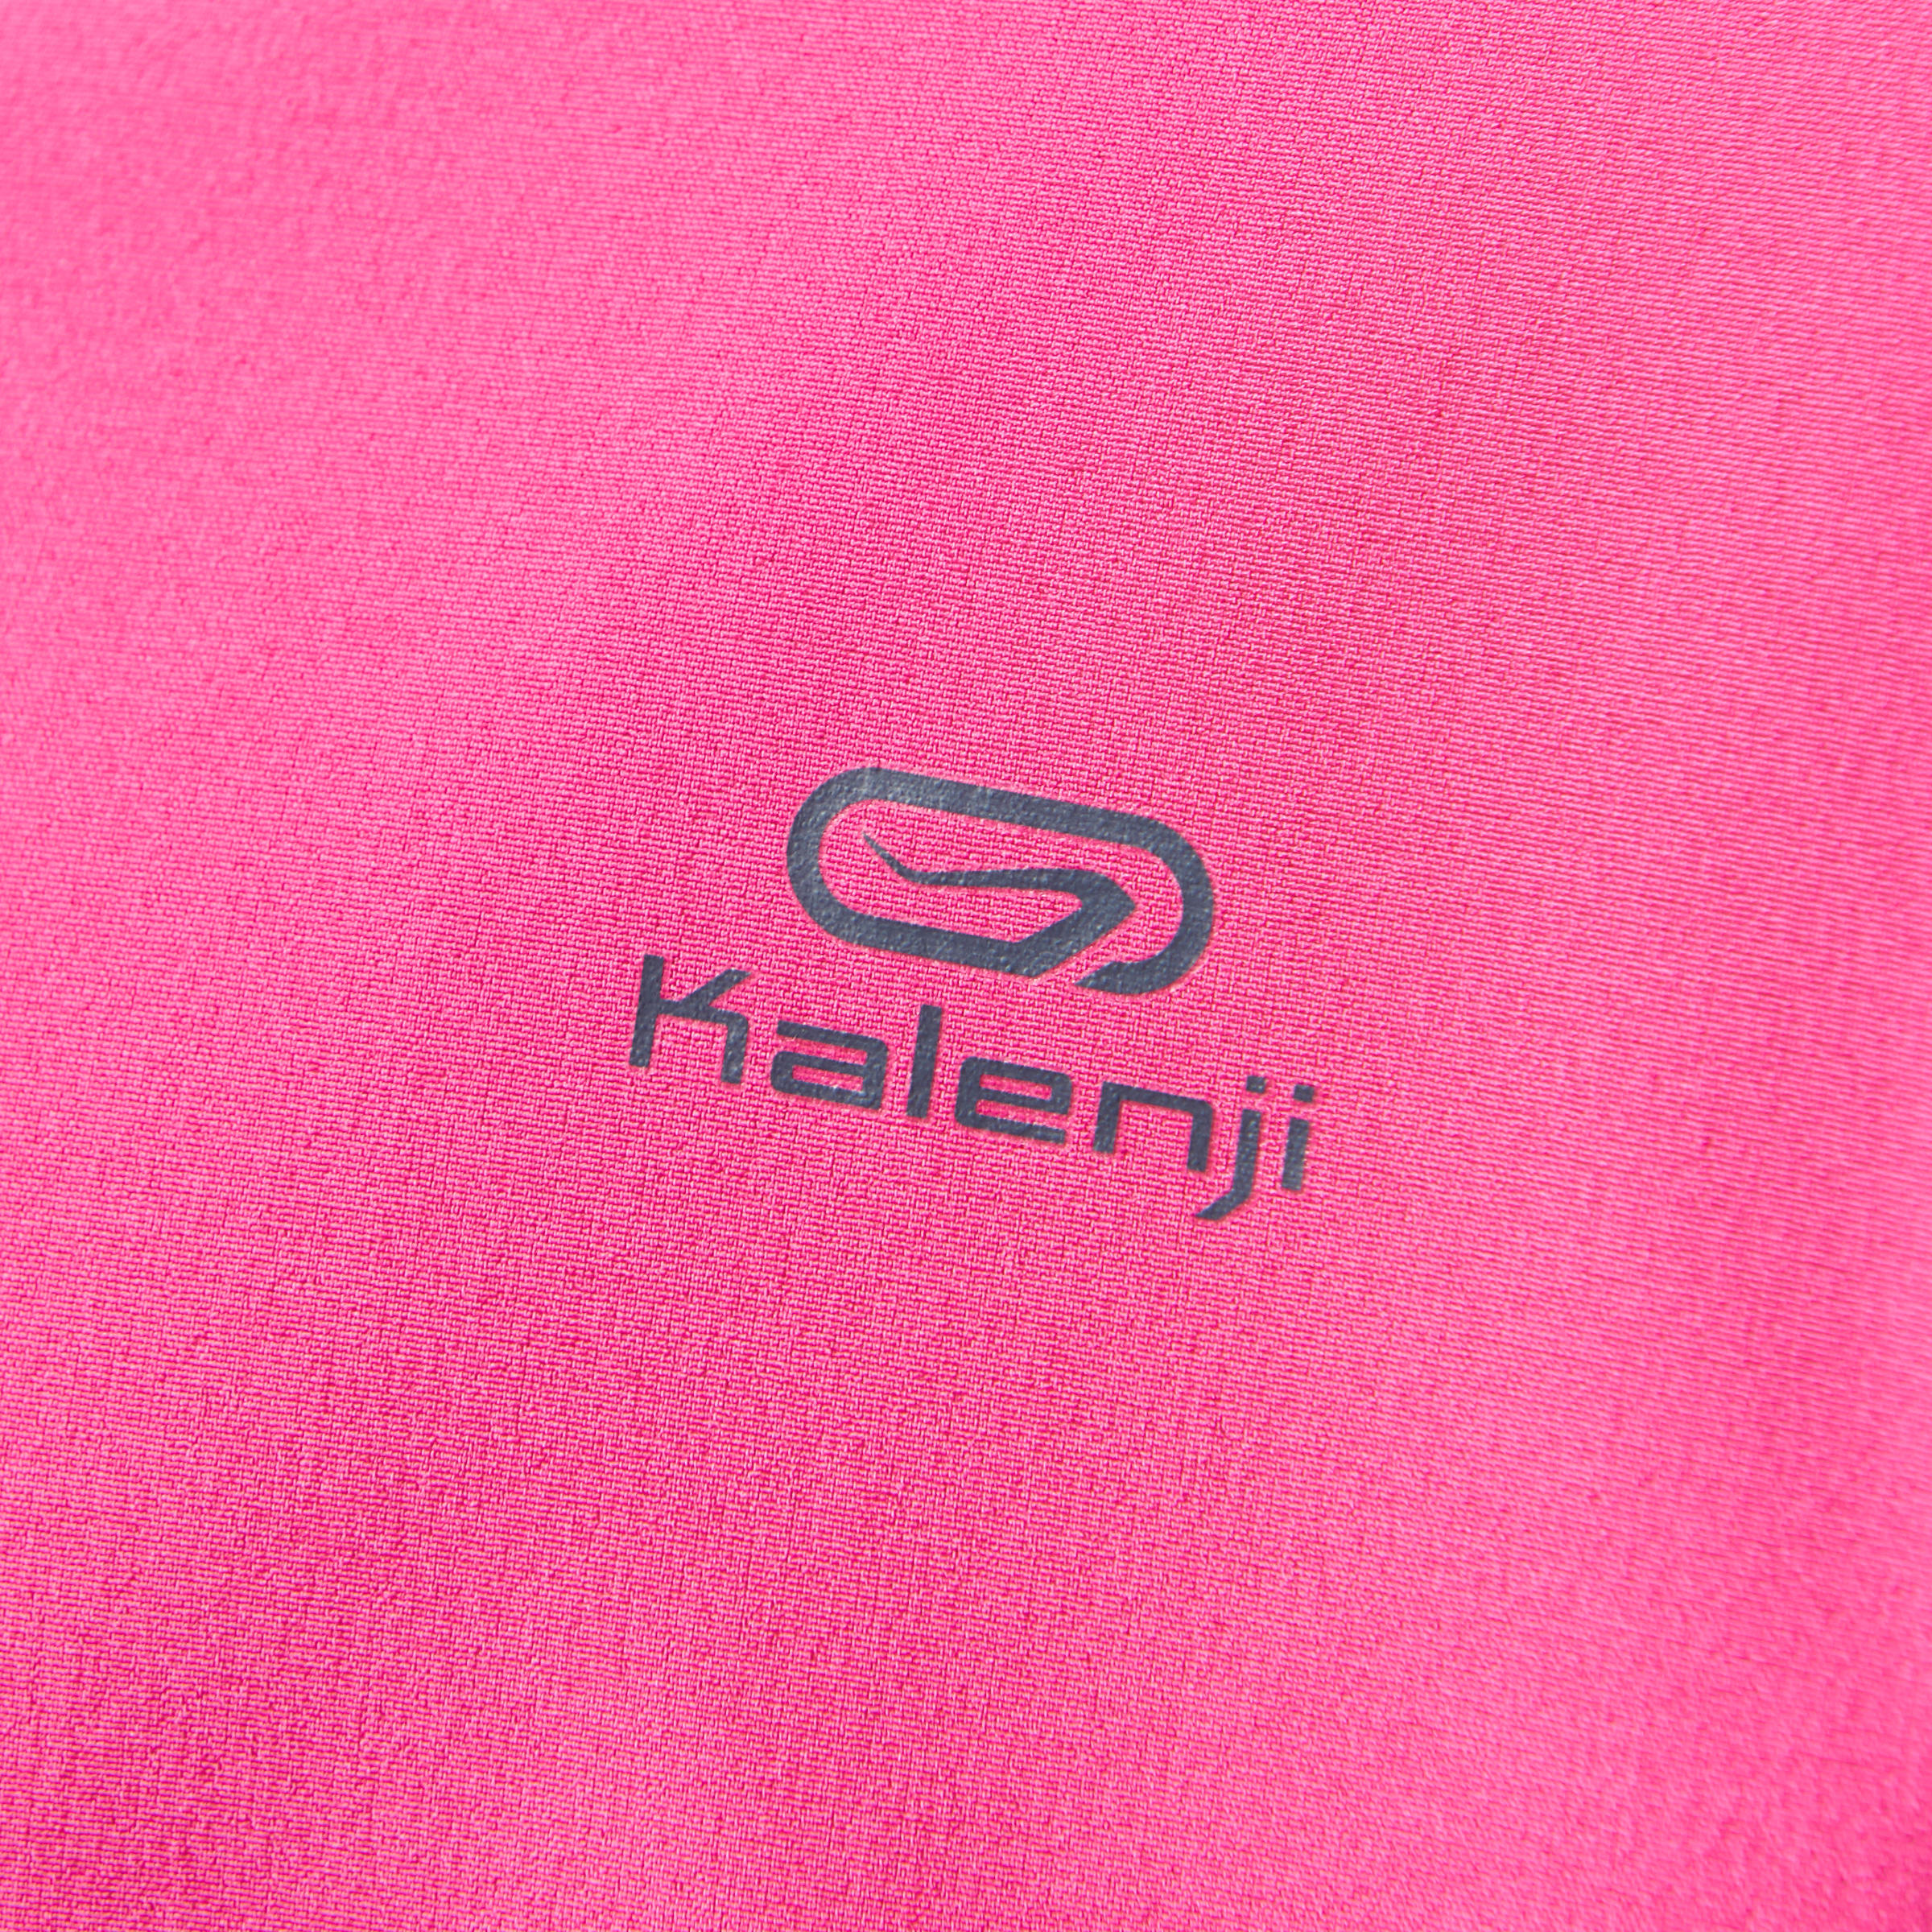 Elio Children's Running Hooded Jersey - Pink/Blue
 9/16